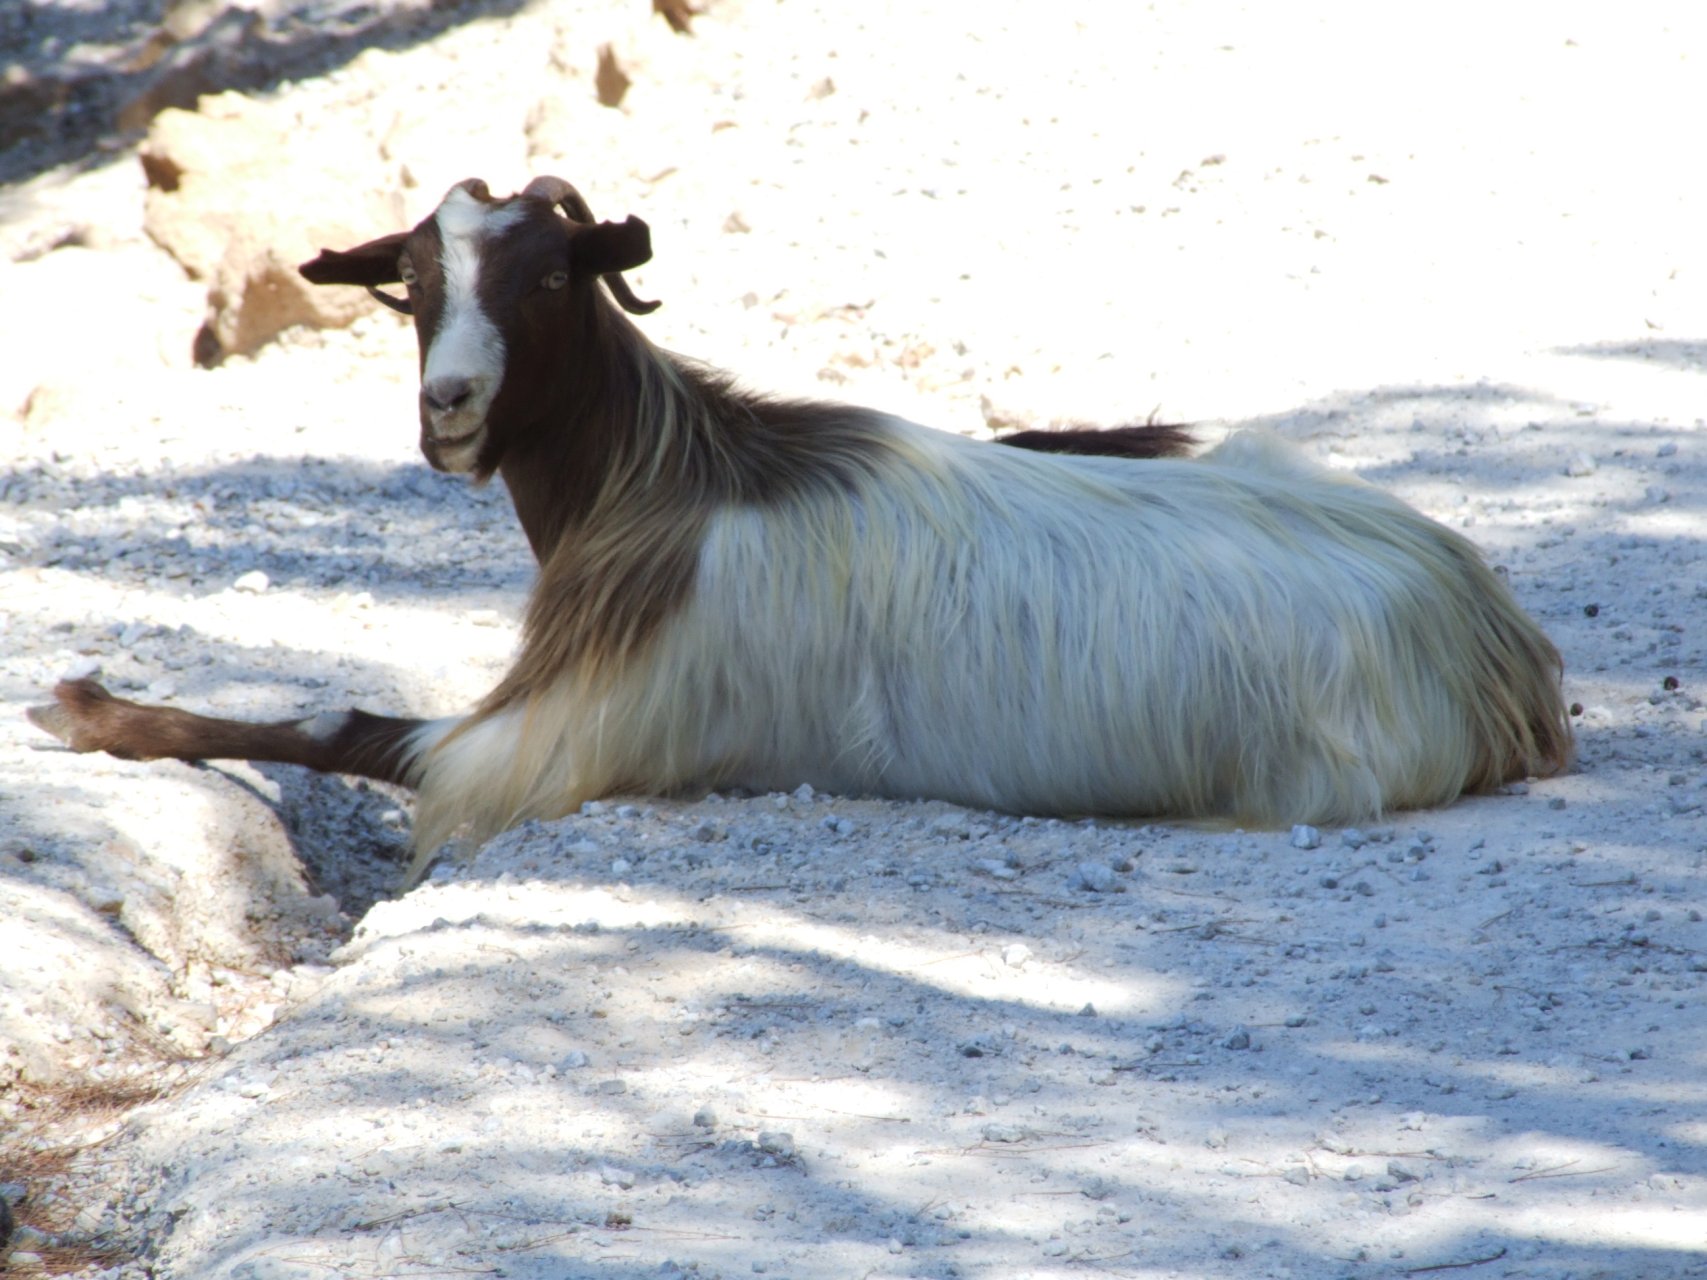 Jedynymi mieszkańcami klasztoru Ágios Ióannis Timianós są dzisiaj kozy